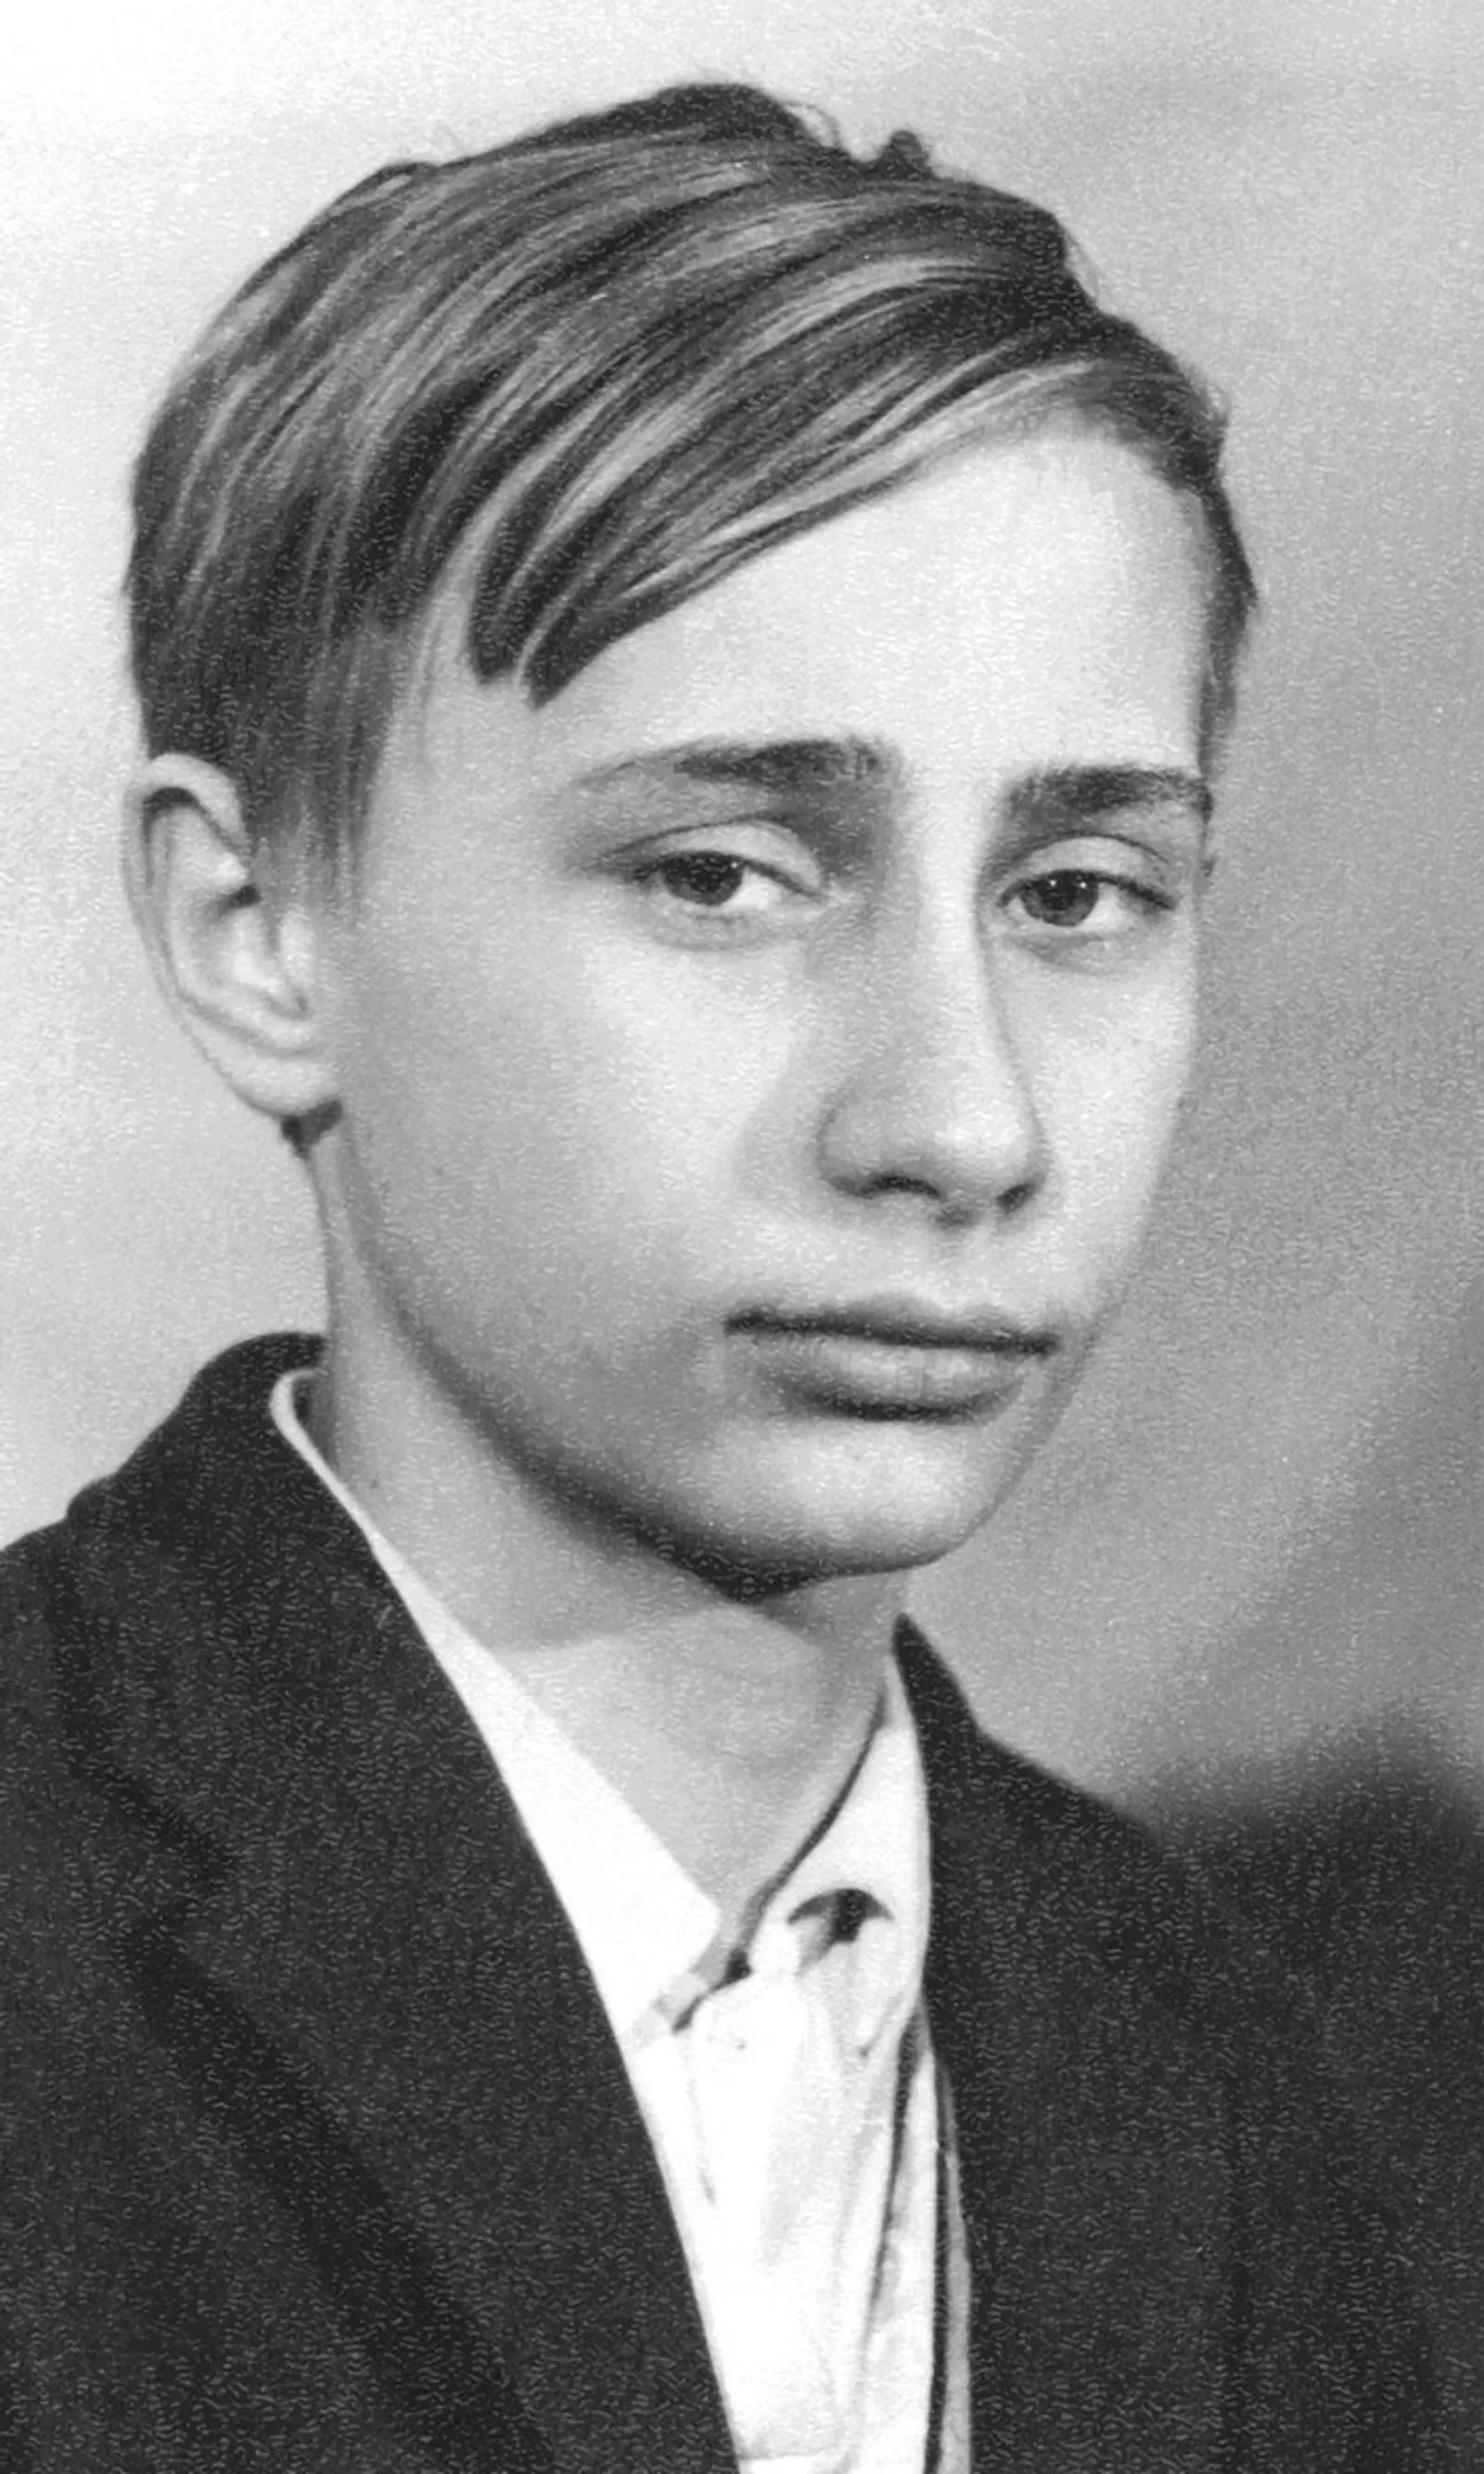 Profil Vladimir Putin, Remaja Pembuat Onar yang Jadi Presiden Rusia